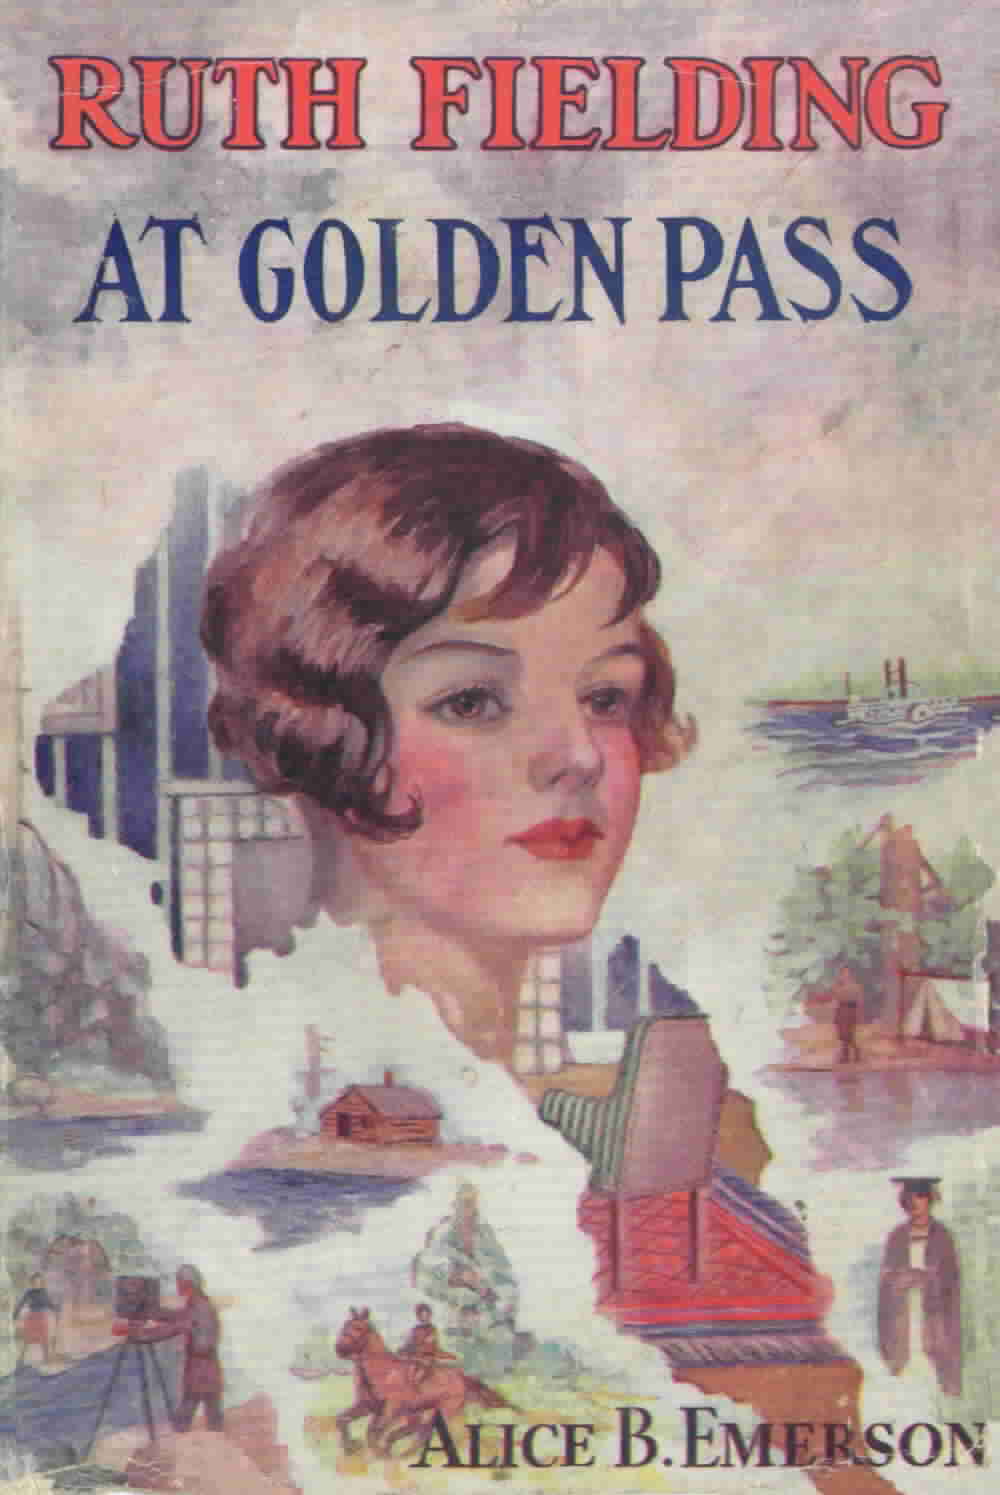 21. Ruth Fielding at Golden Pass